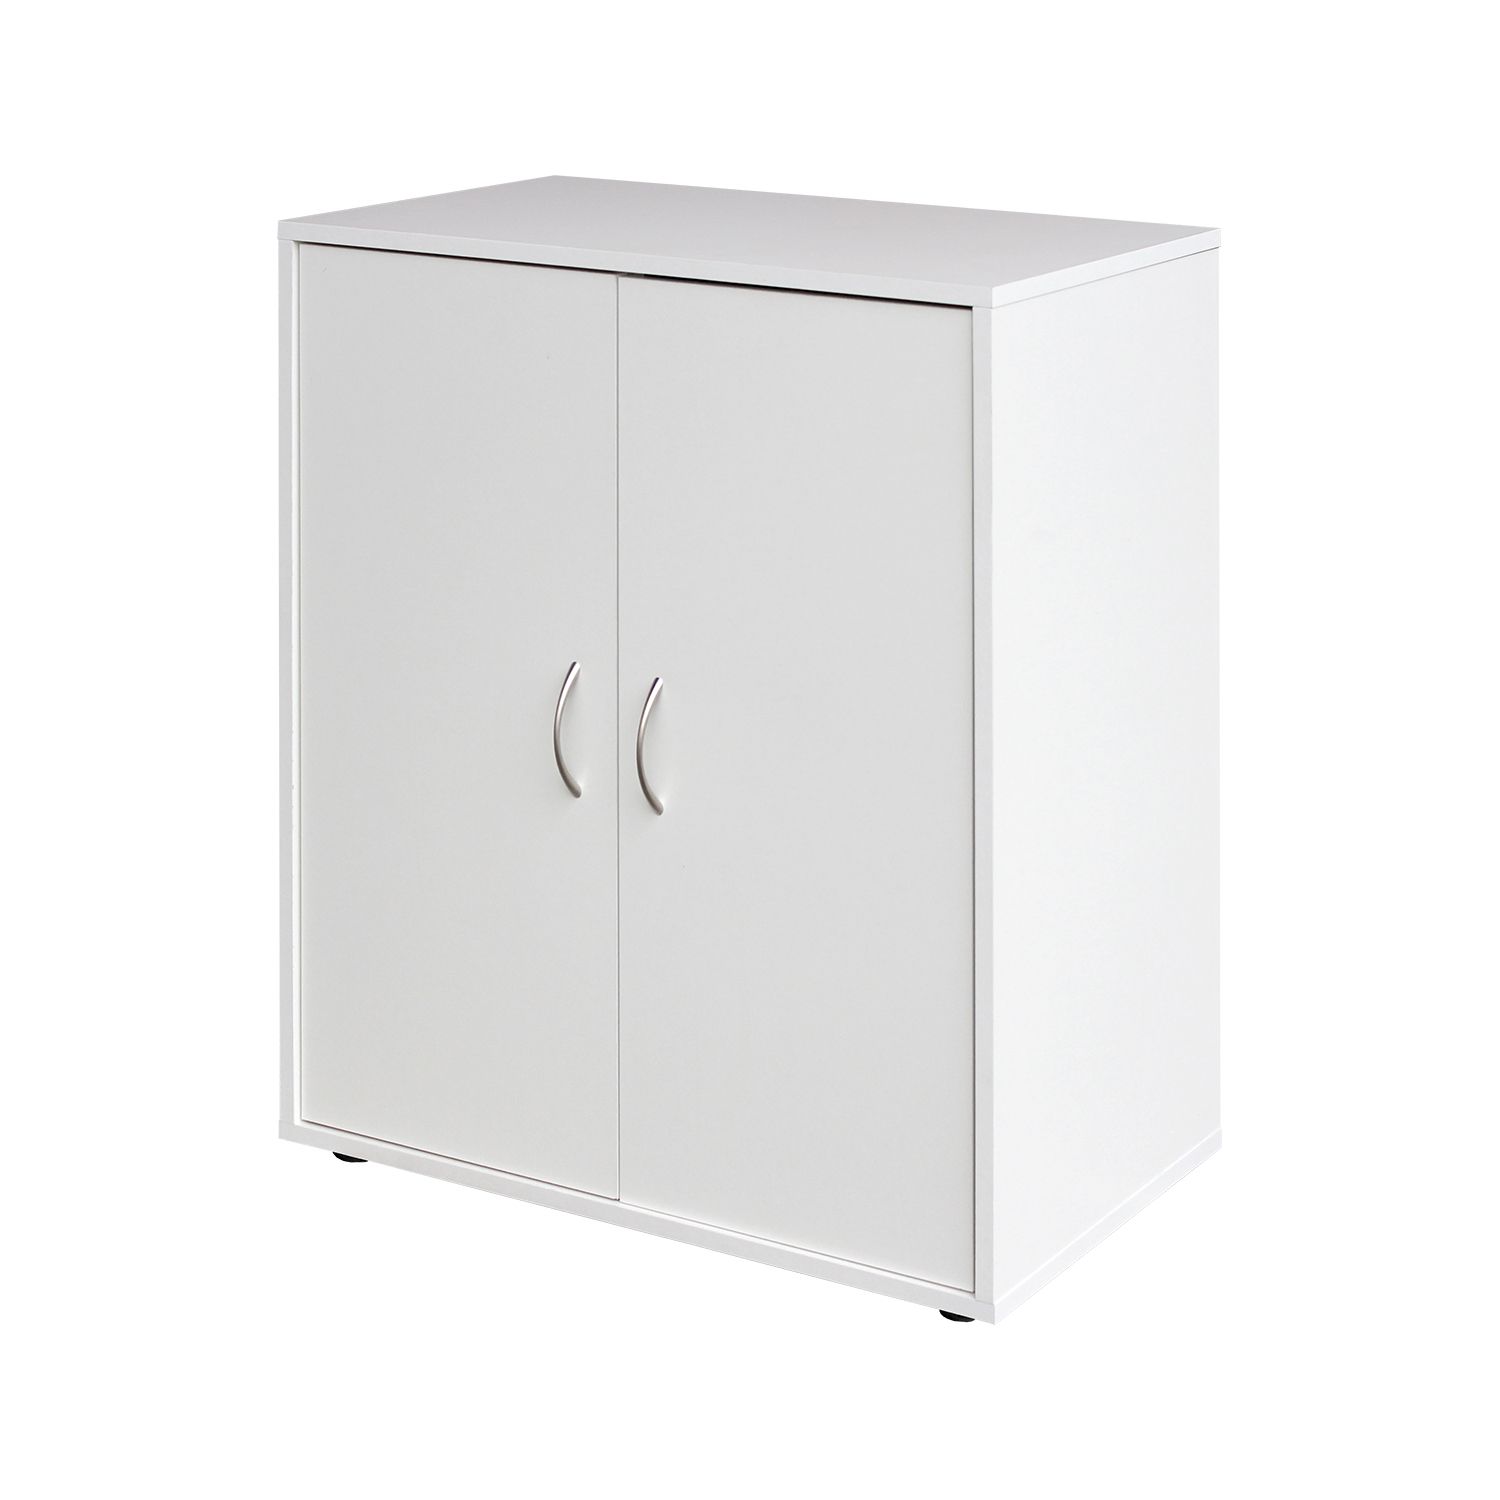 Prádelník 2 dveře 1501 bílý - IDEA nábytek